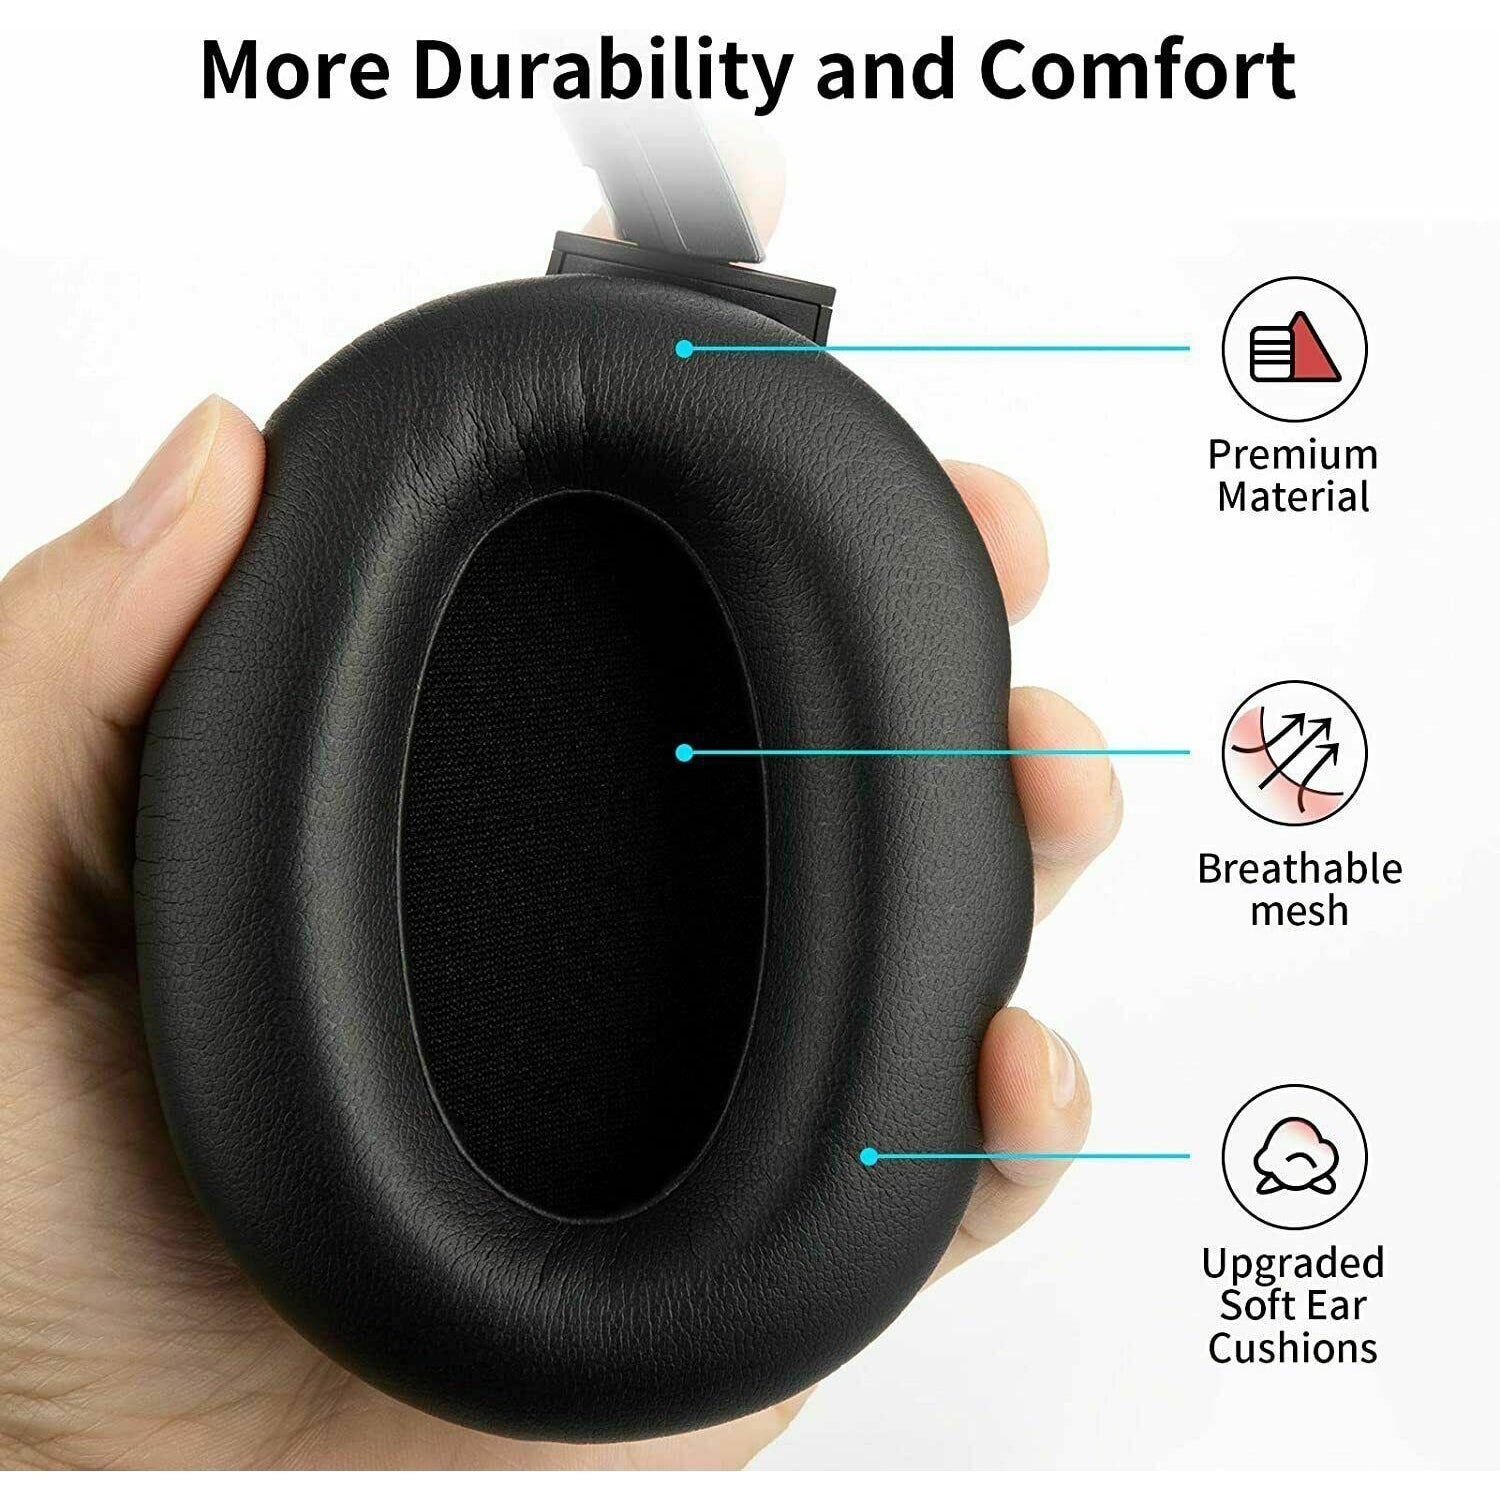 Cowin - Black - SE7 Bluetooth Active Noise Cancelling Headphones